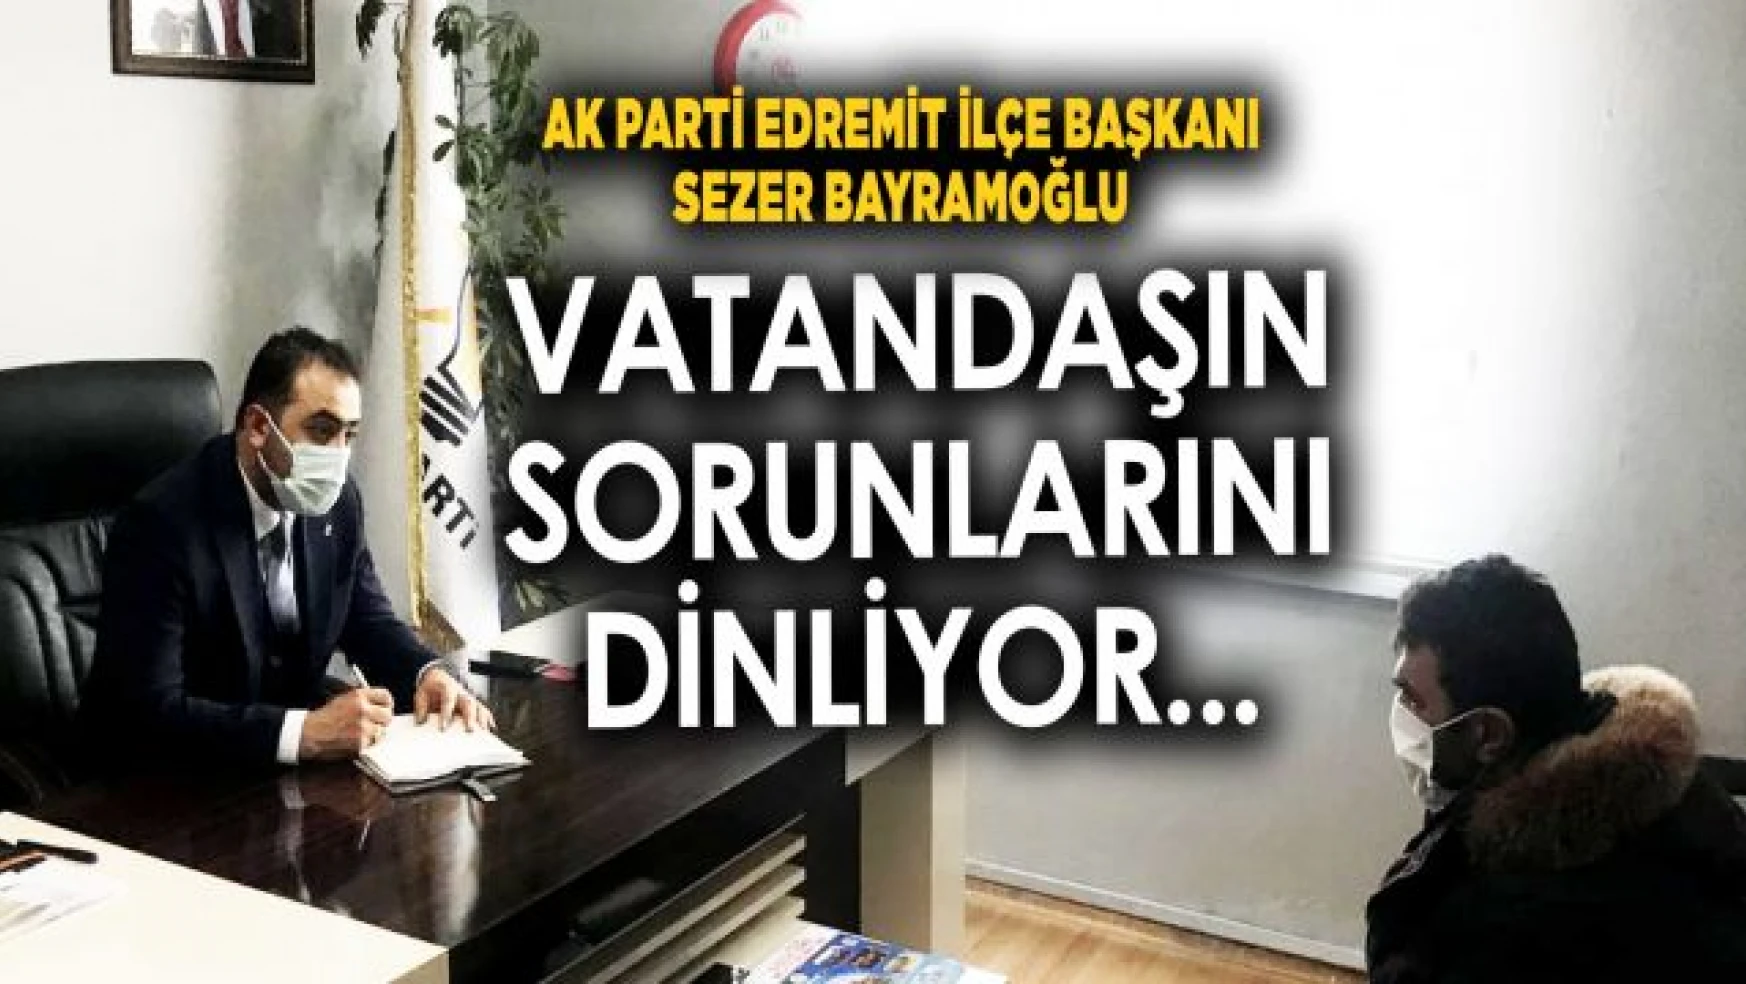 AK Parti Edremit İlçe Başkanı Bayramoğlu, Halkın sorunlarını dinlemeye devam ediyor